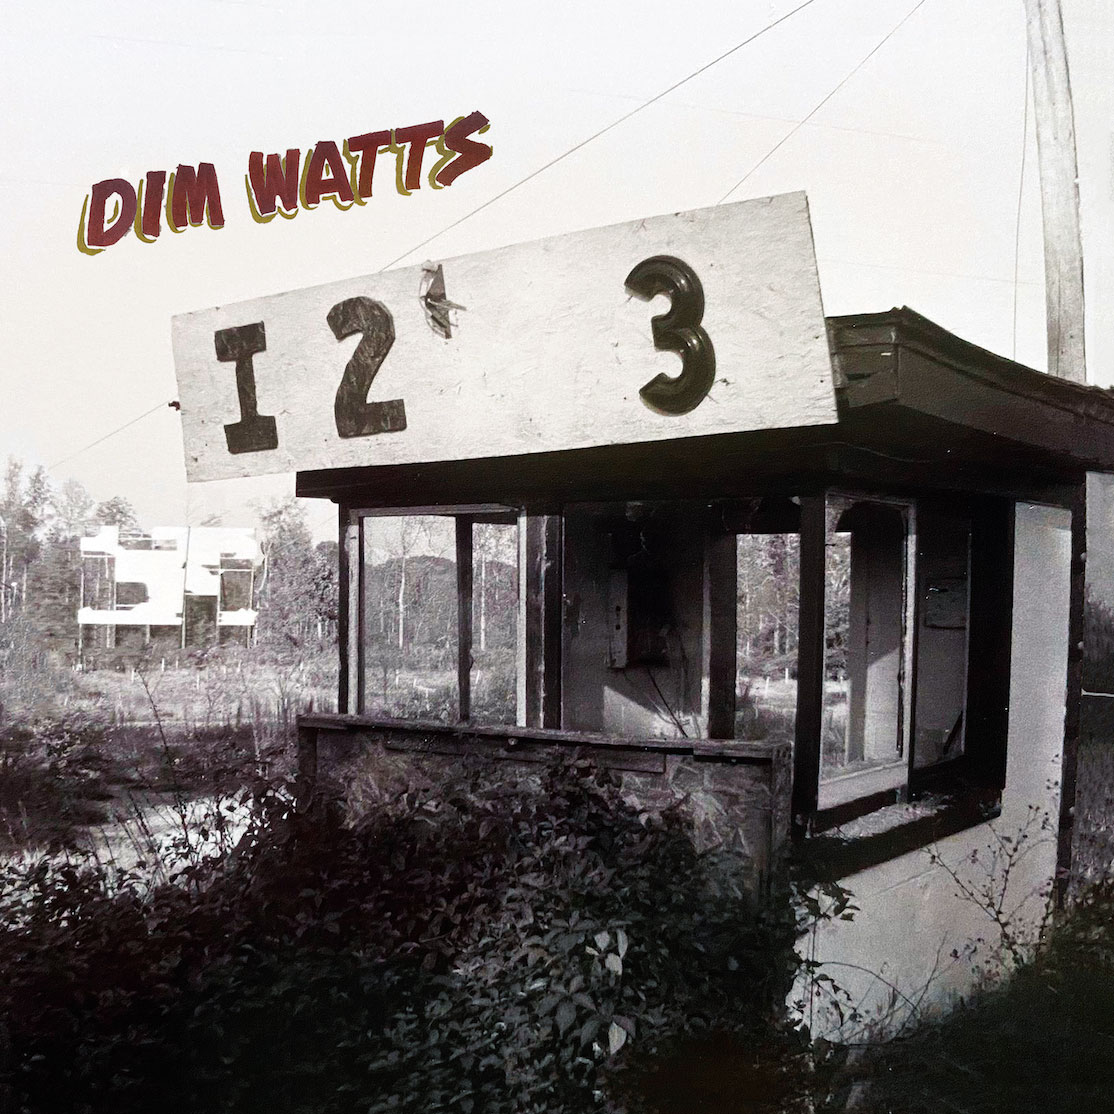  Escucha “Eye Two Three” de Dim Watts, su más reciente material